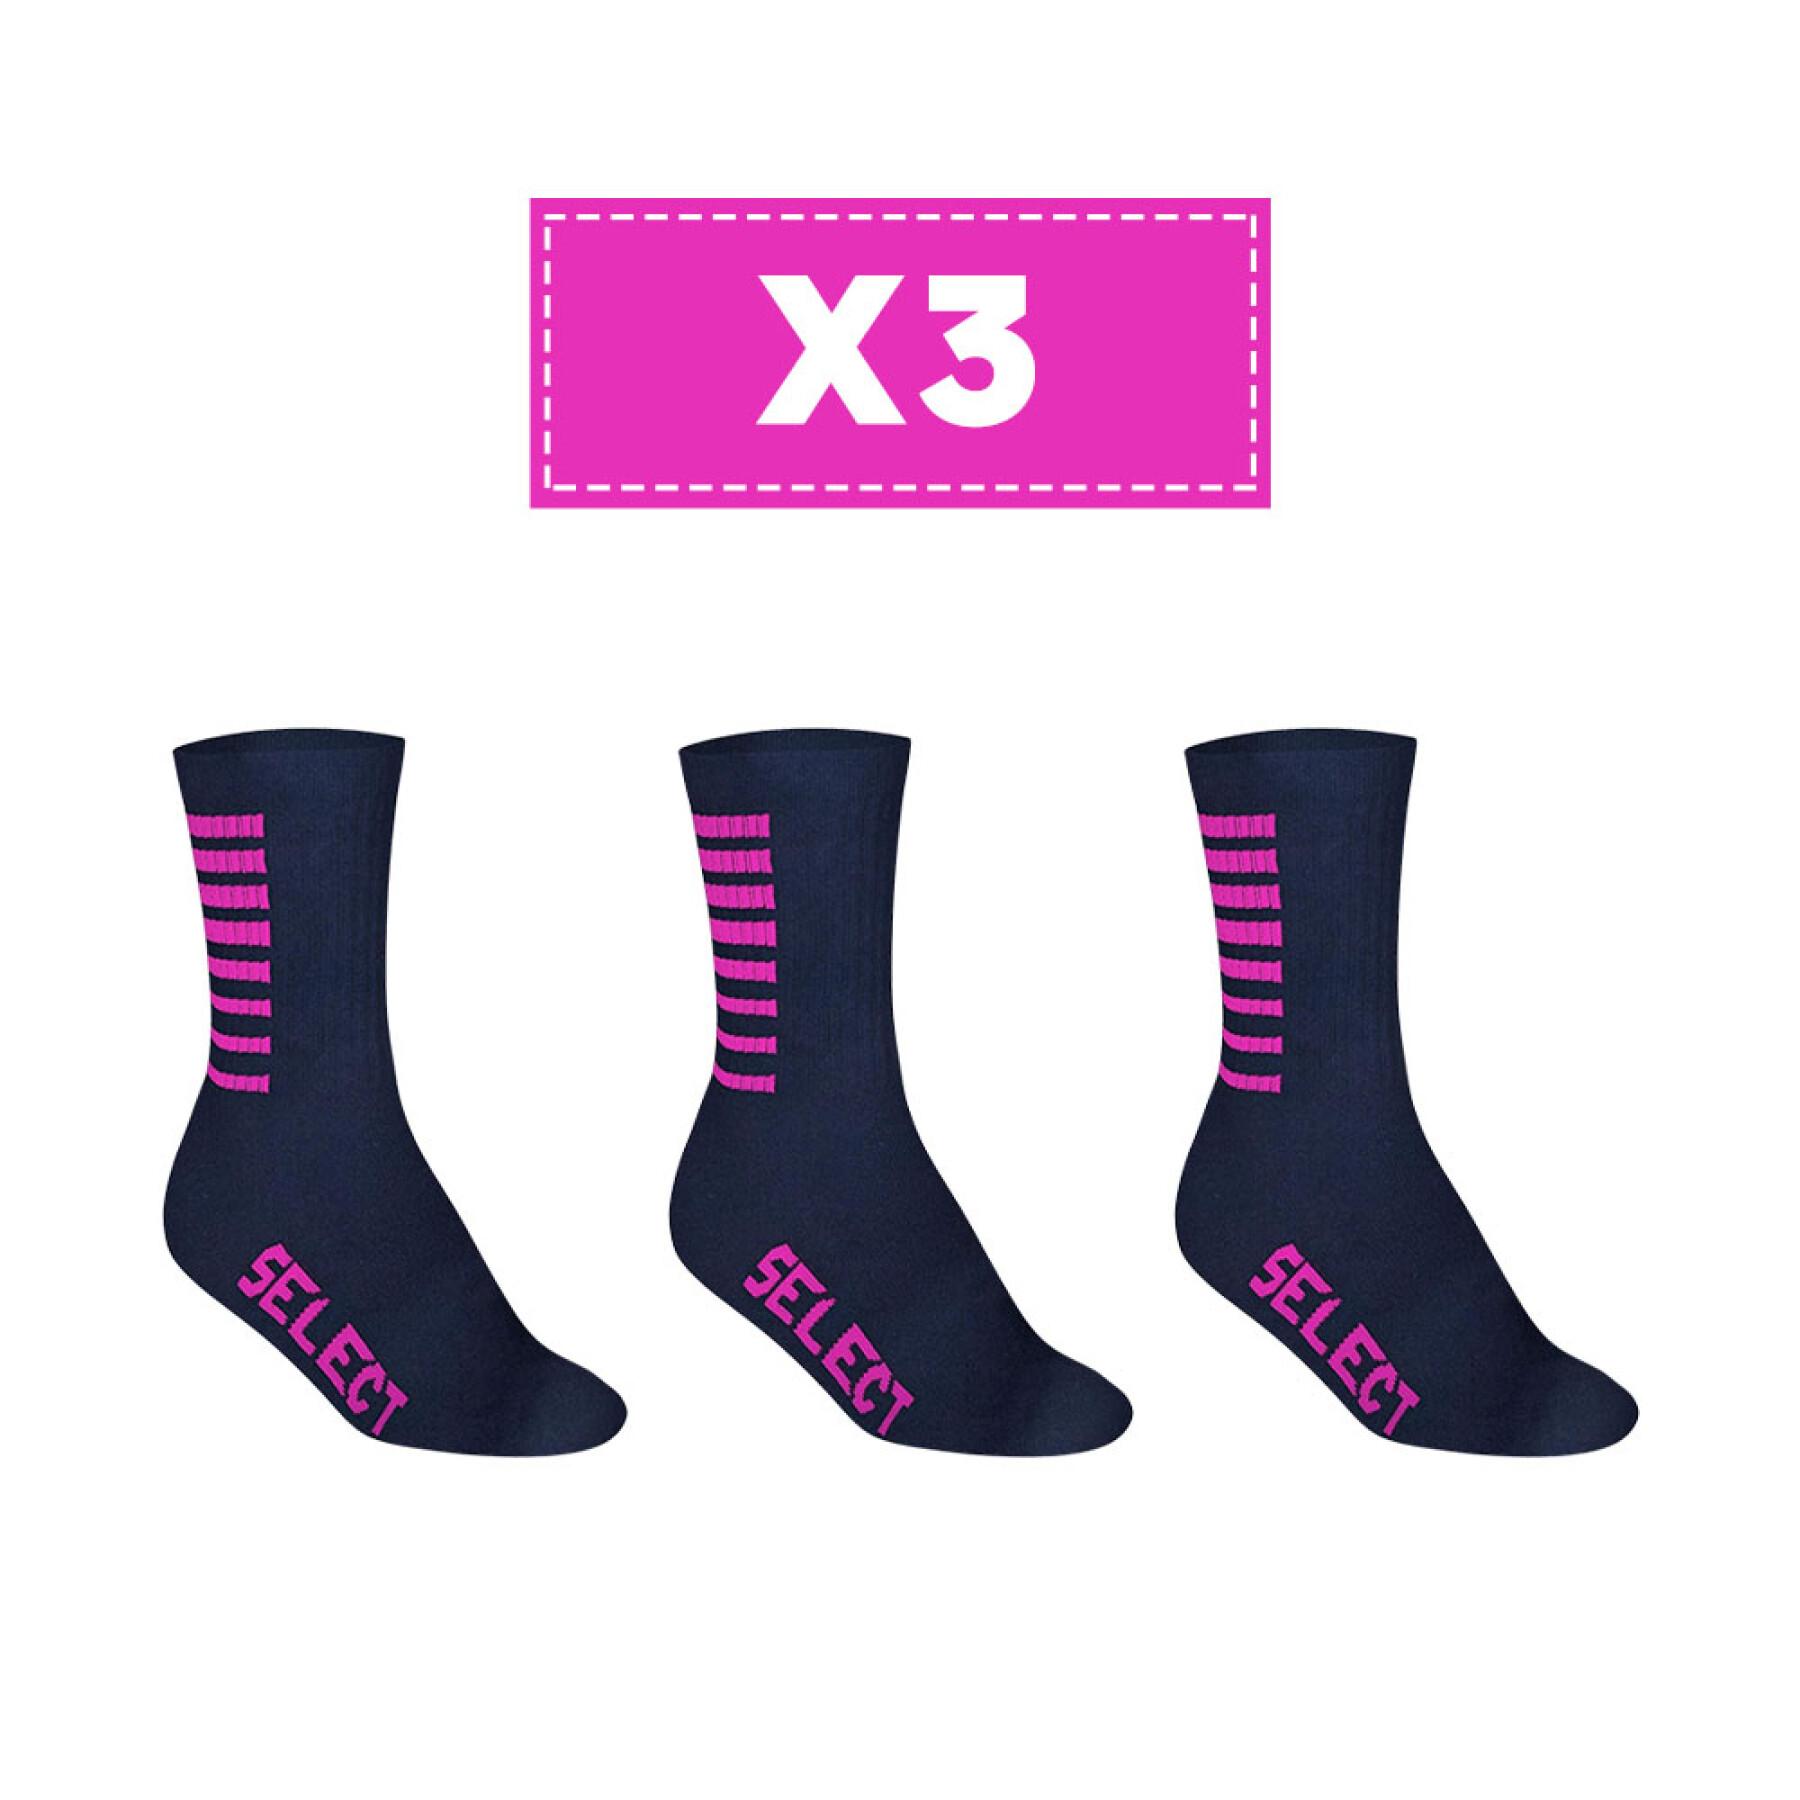 Lote de 5 pares de calcetines Select Basic